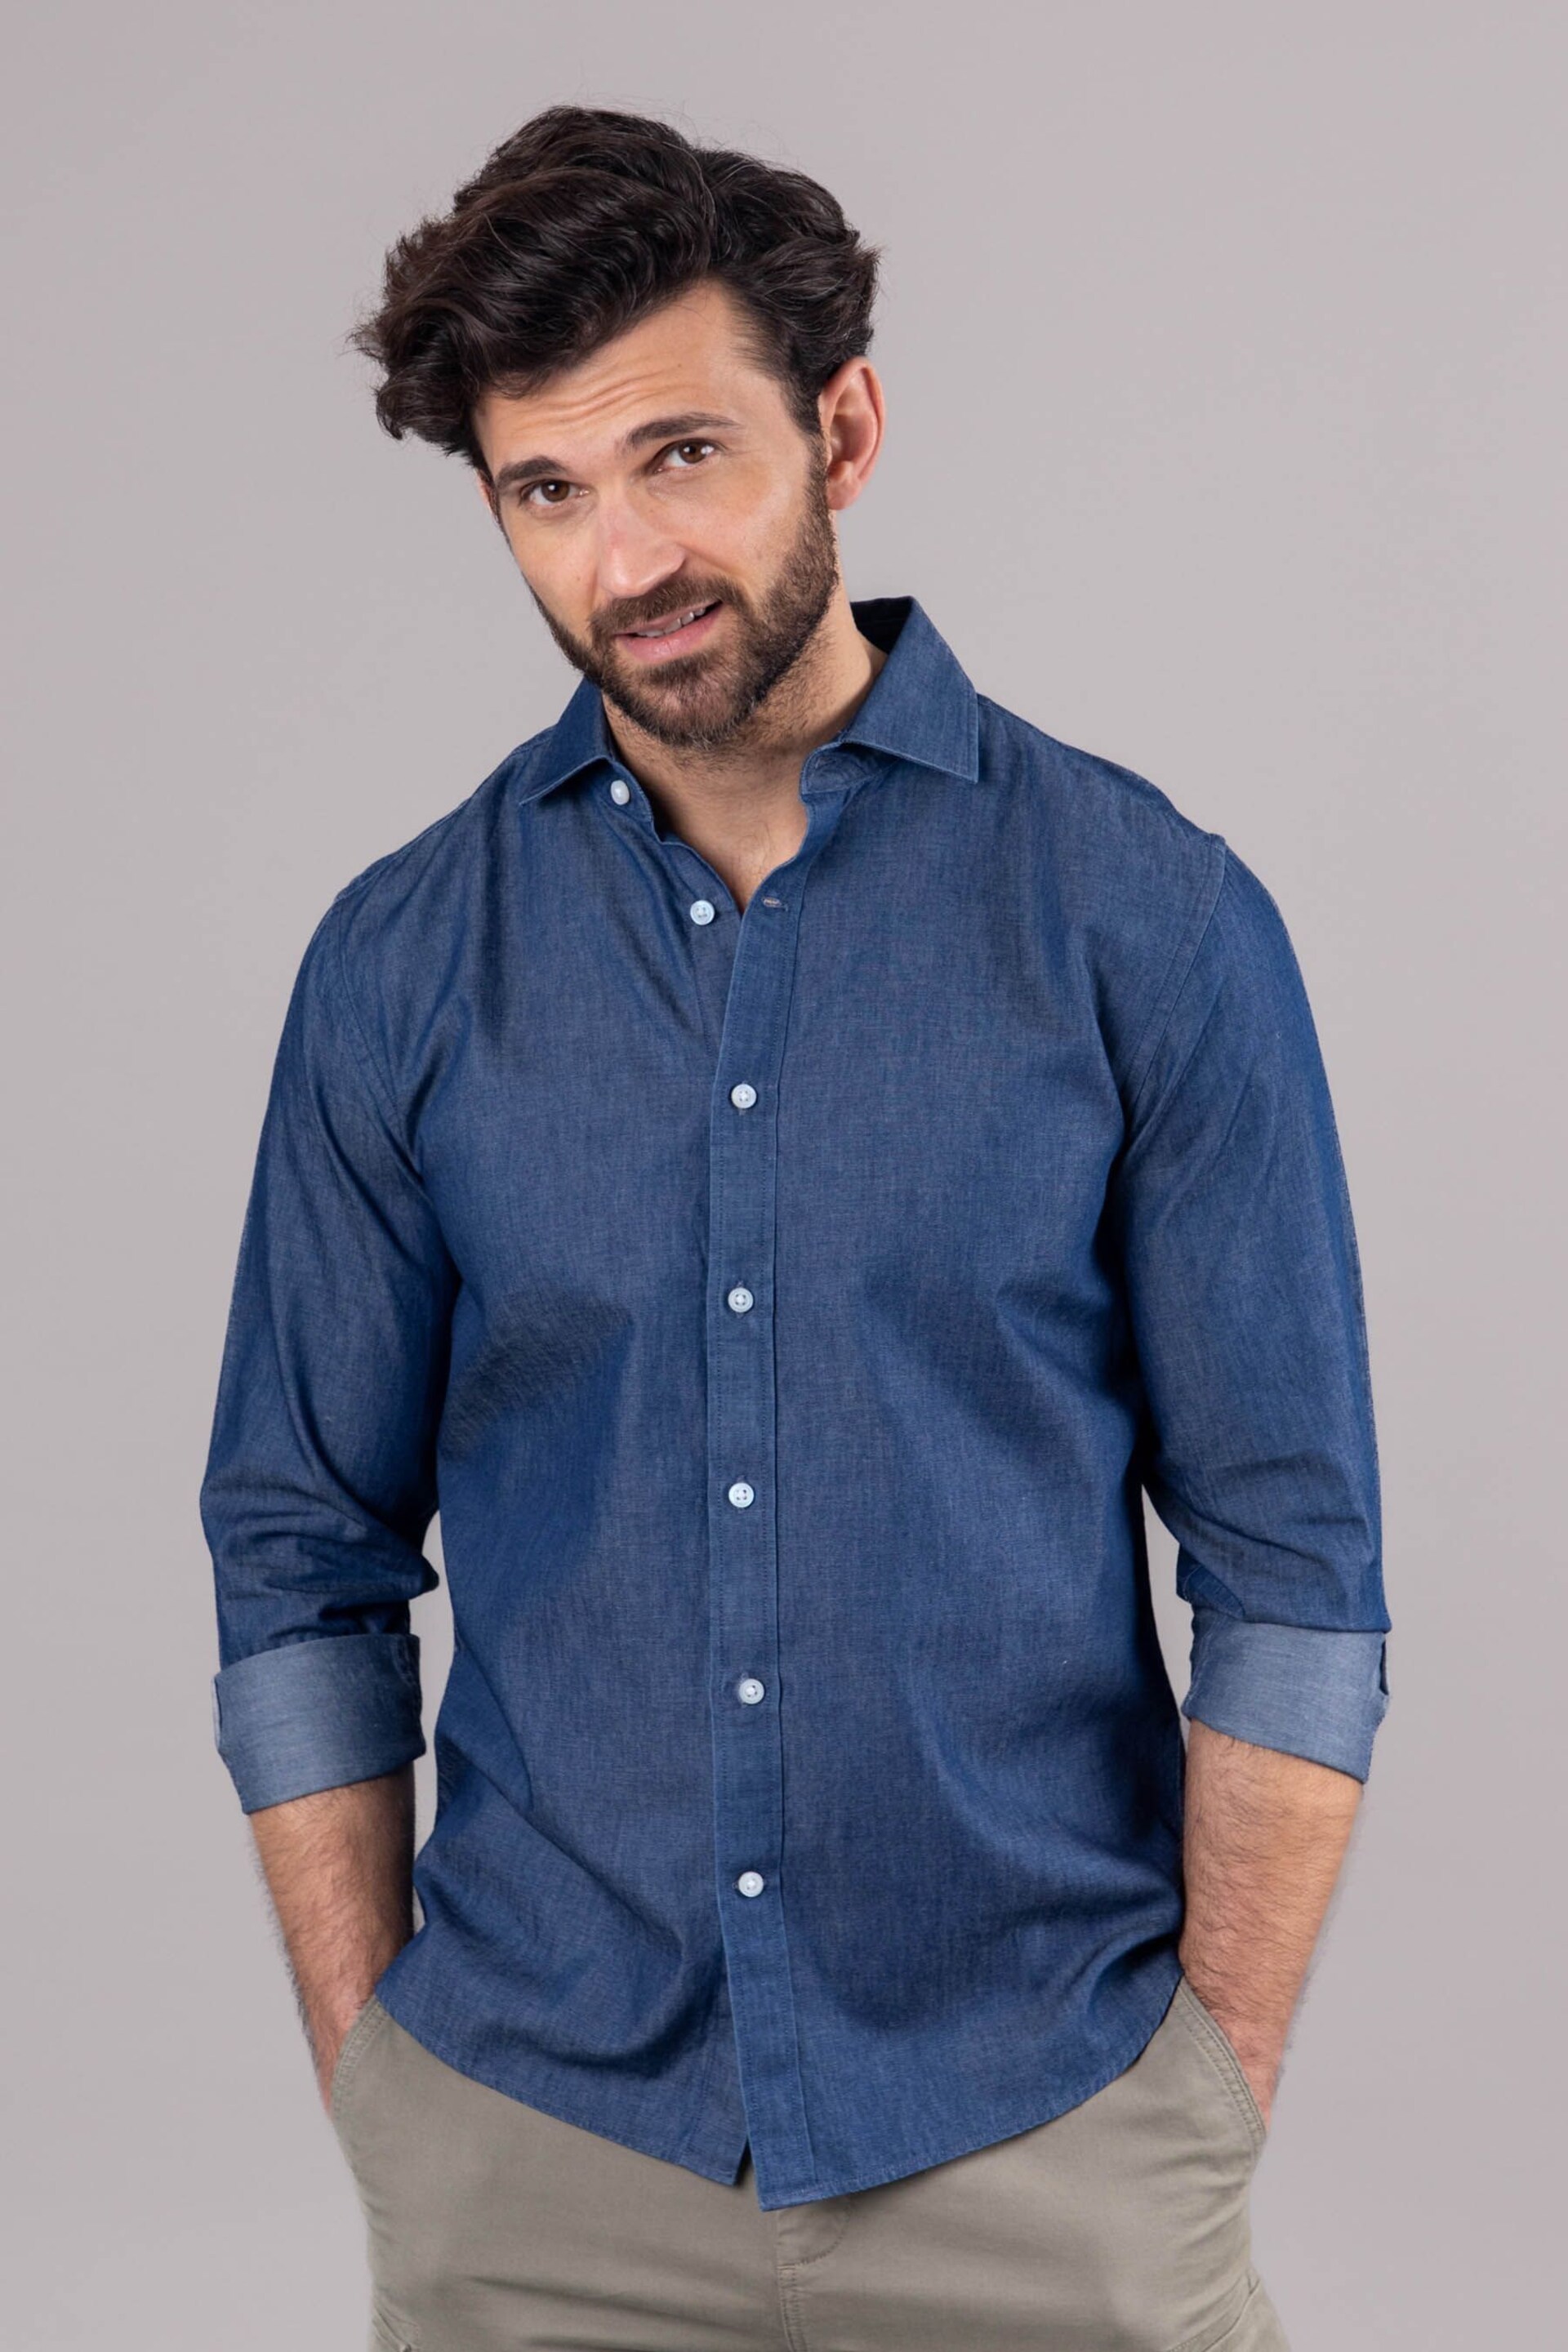 Lakeland Clothing Blue Lee Cotton Shirt - Image 1 of 5